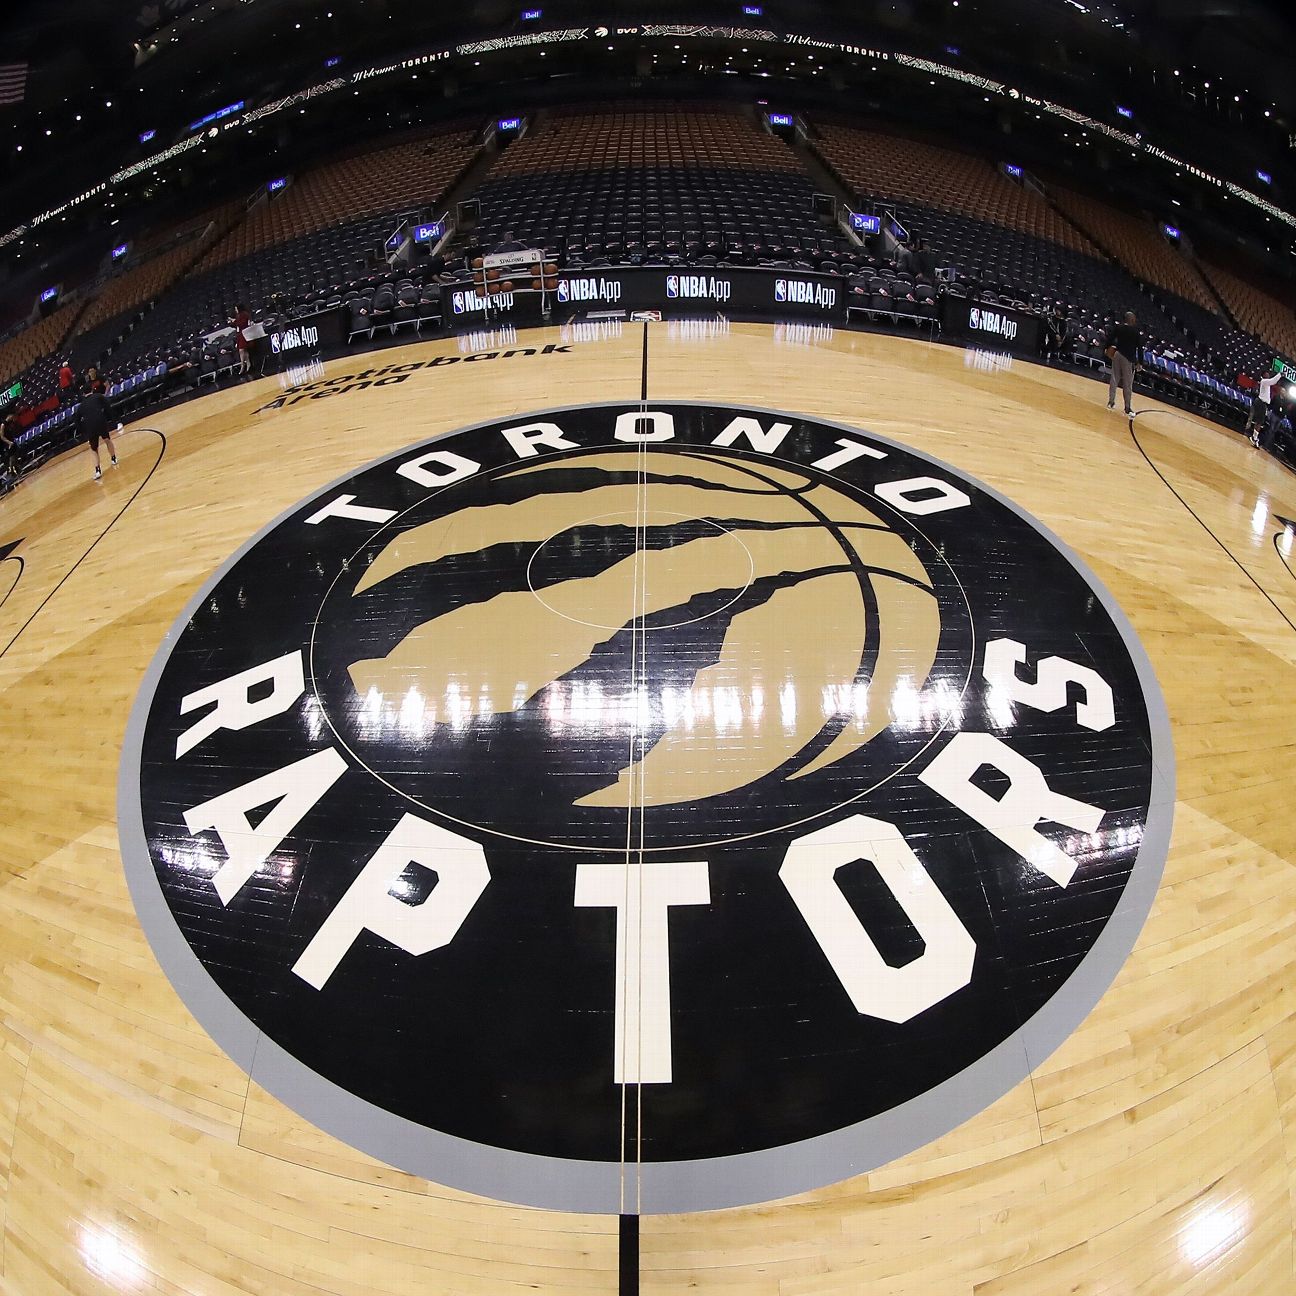 Toronto Raptors staying in Tampa for remainder of NBA season